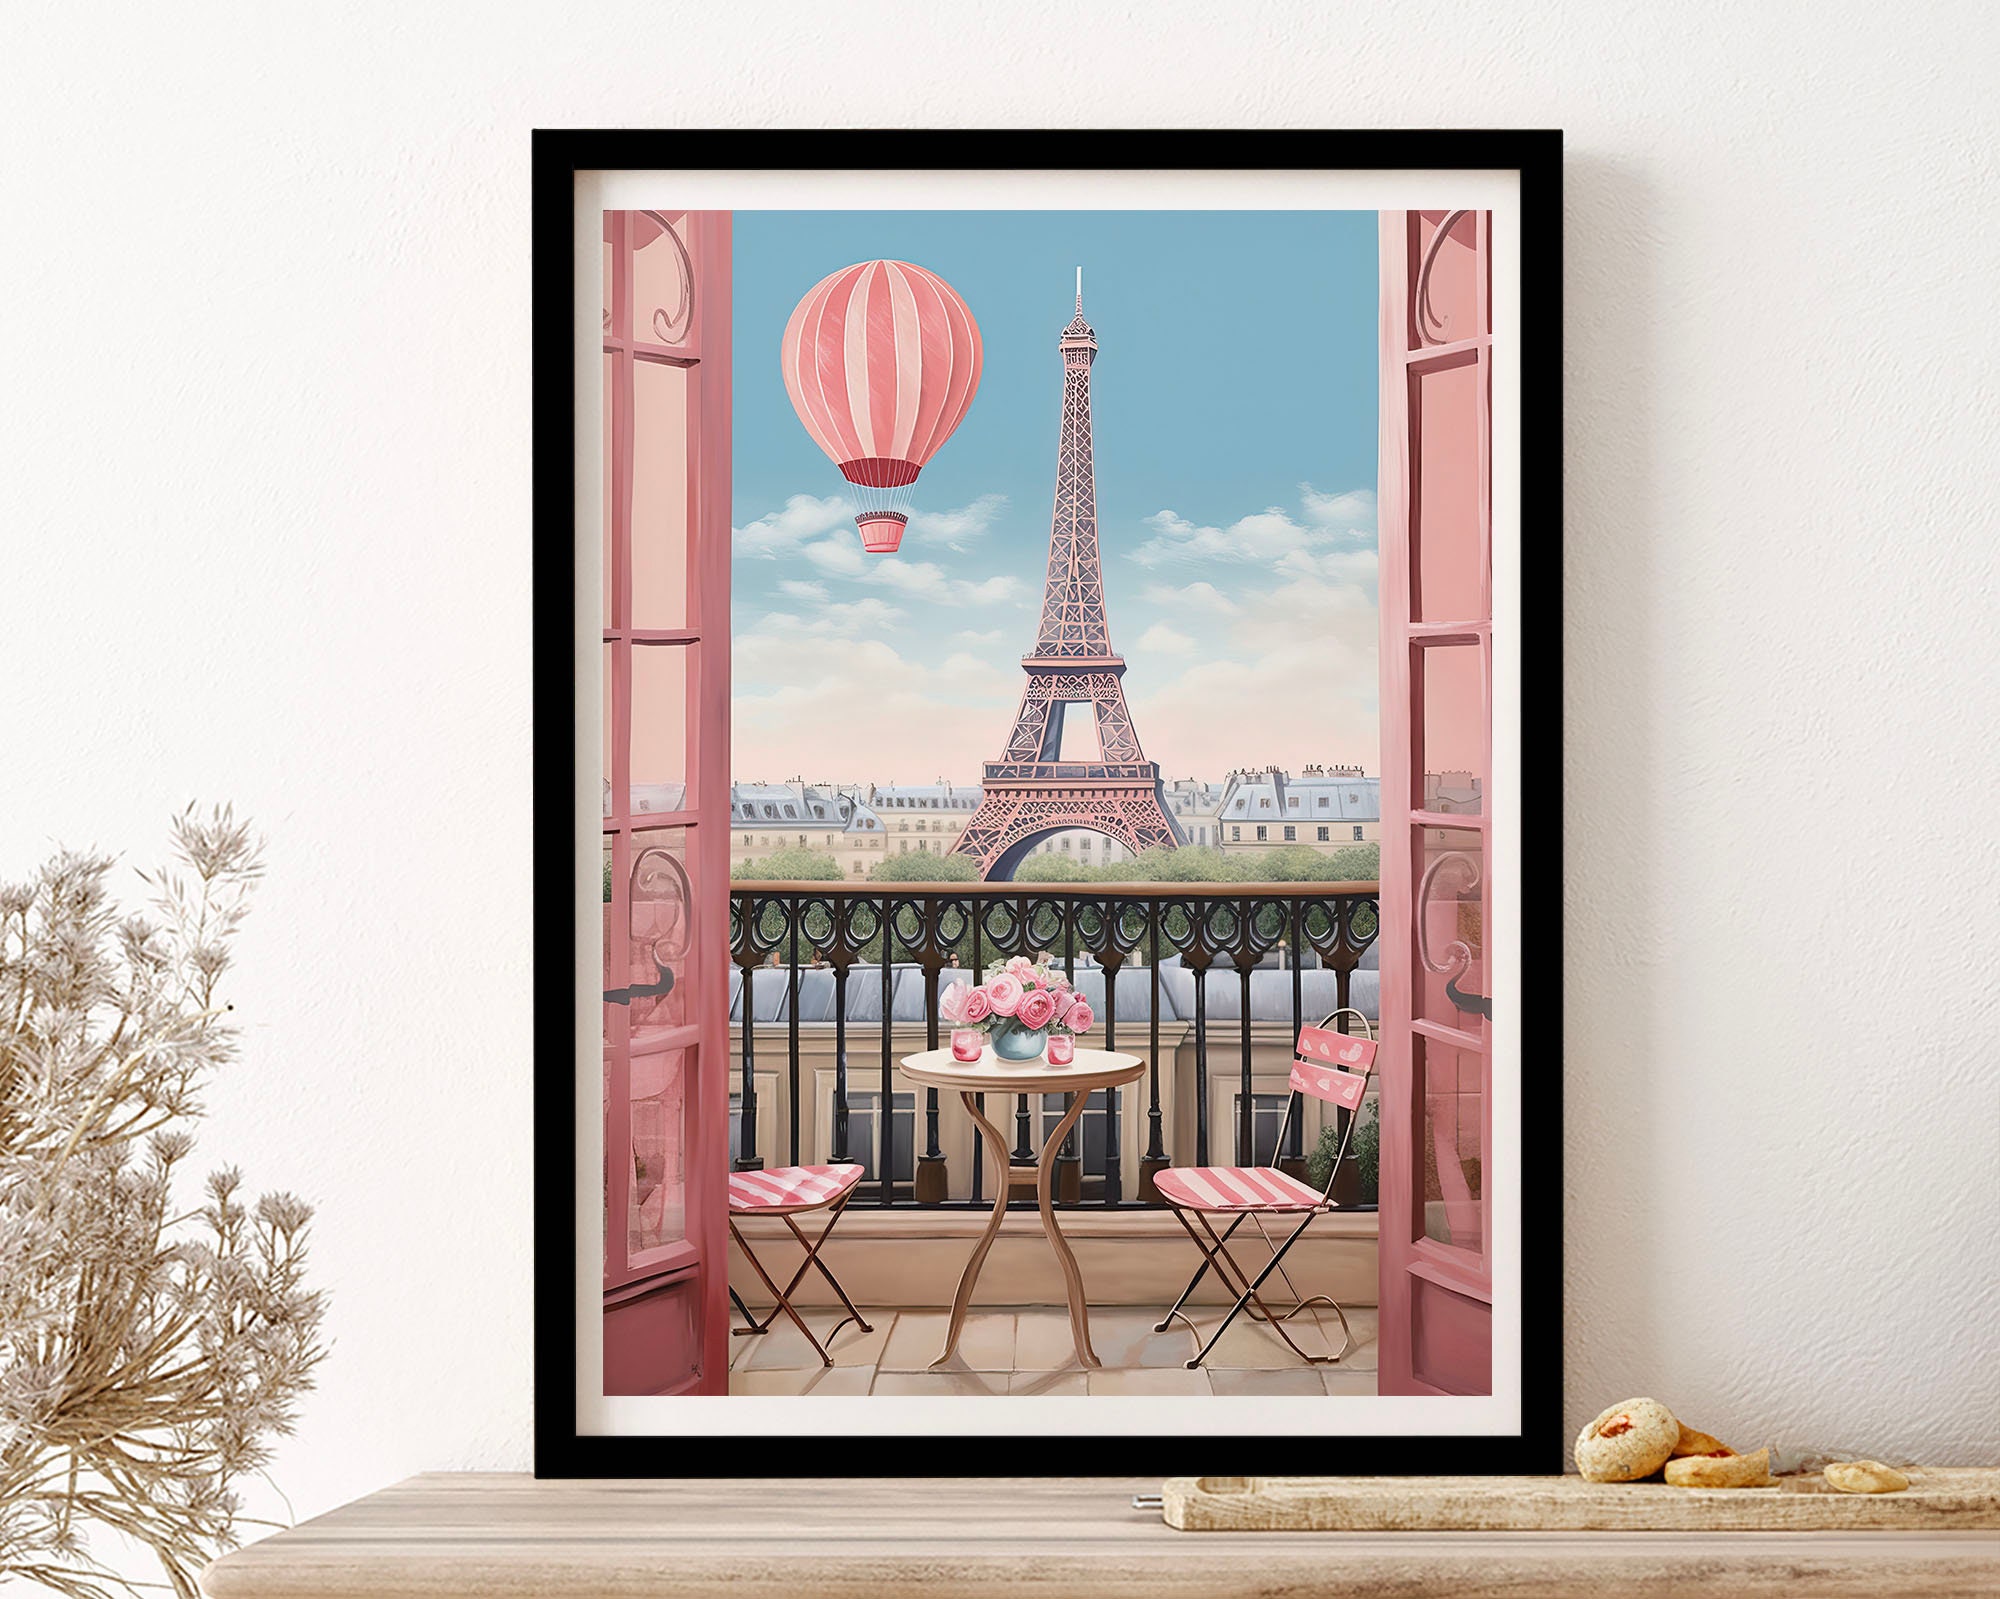 Deko-Hänger Eiffelturm Frankreich, 28 cm - Partybedarf Europäische Länder  Motto-Party Produkte 